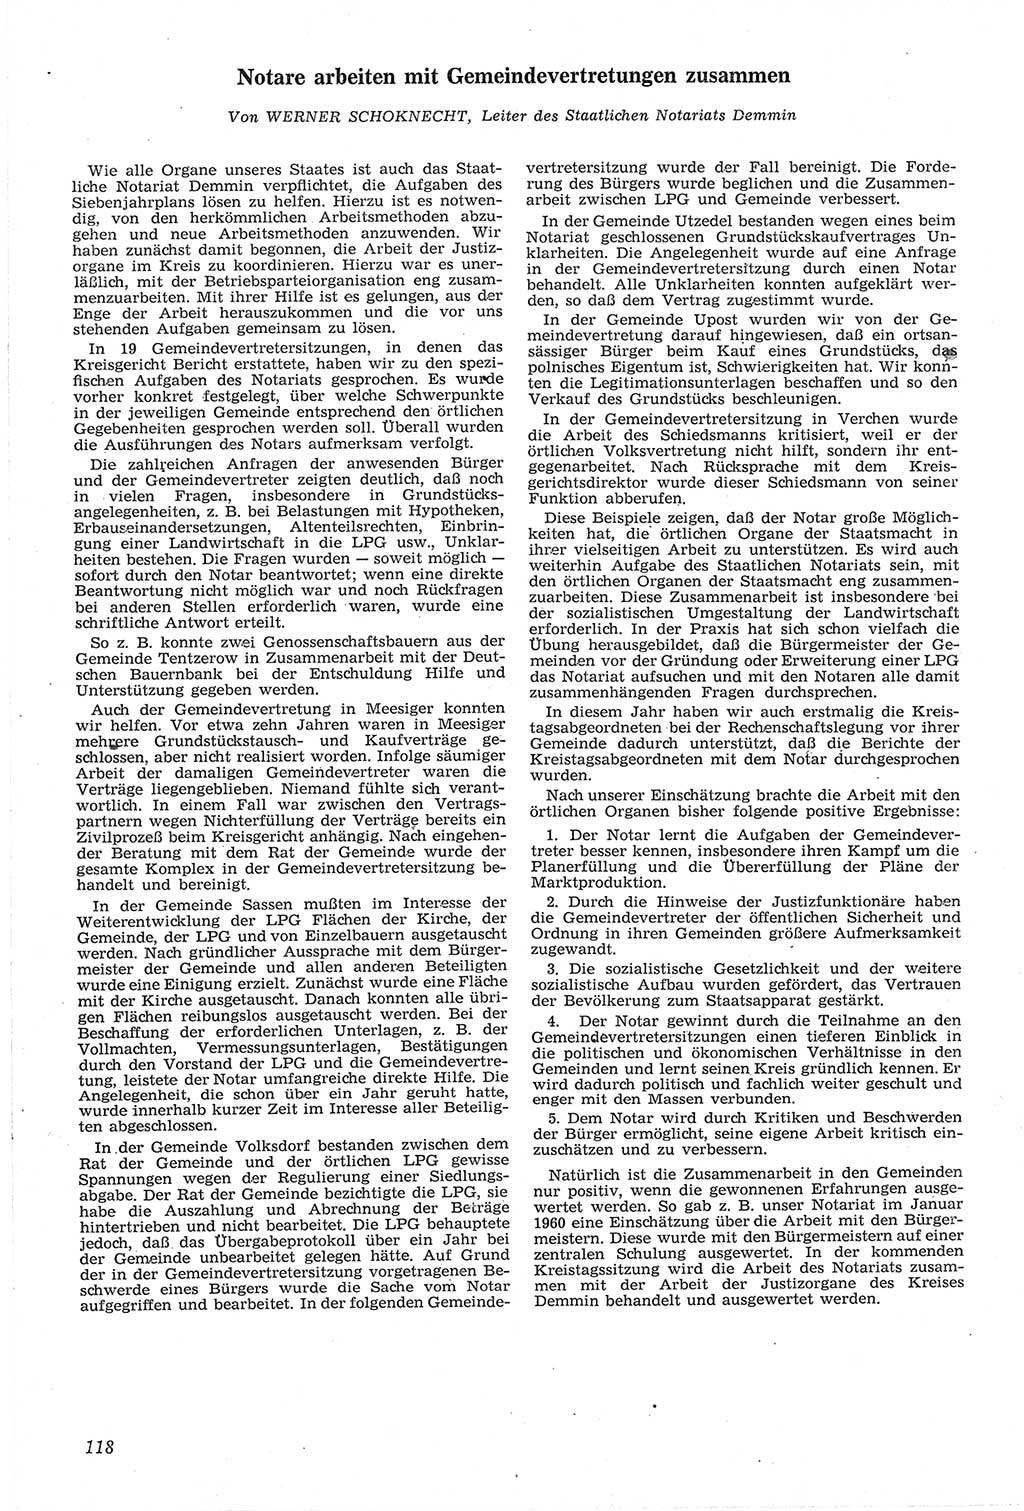 Neue Justiz (NJ), Zeitschrift für Recht und Rechtswissenschaft [Deutsche Demokratische Republik (DDR)], 14. Jahrgang 1960, Seite 118 (NJ DDR 1960, S. 118)